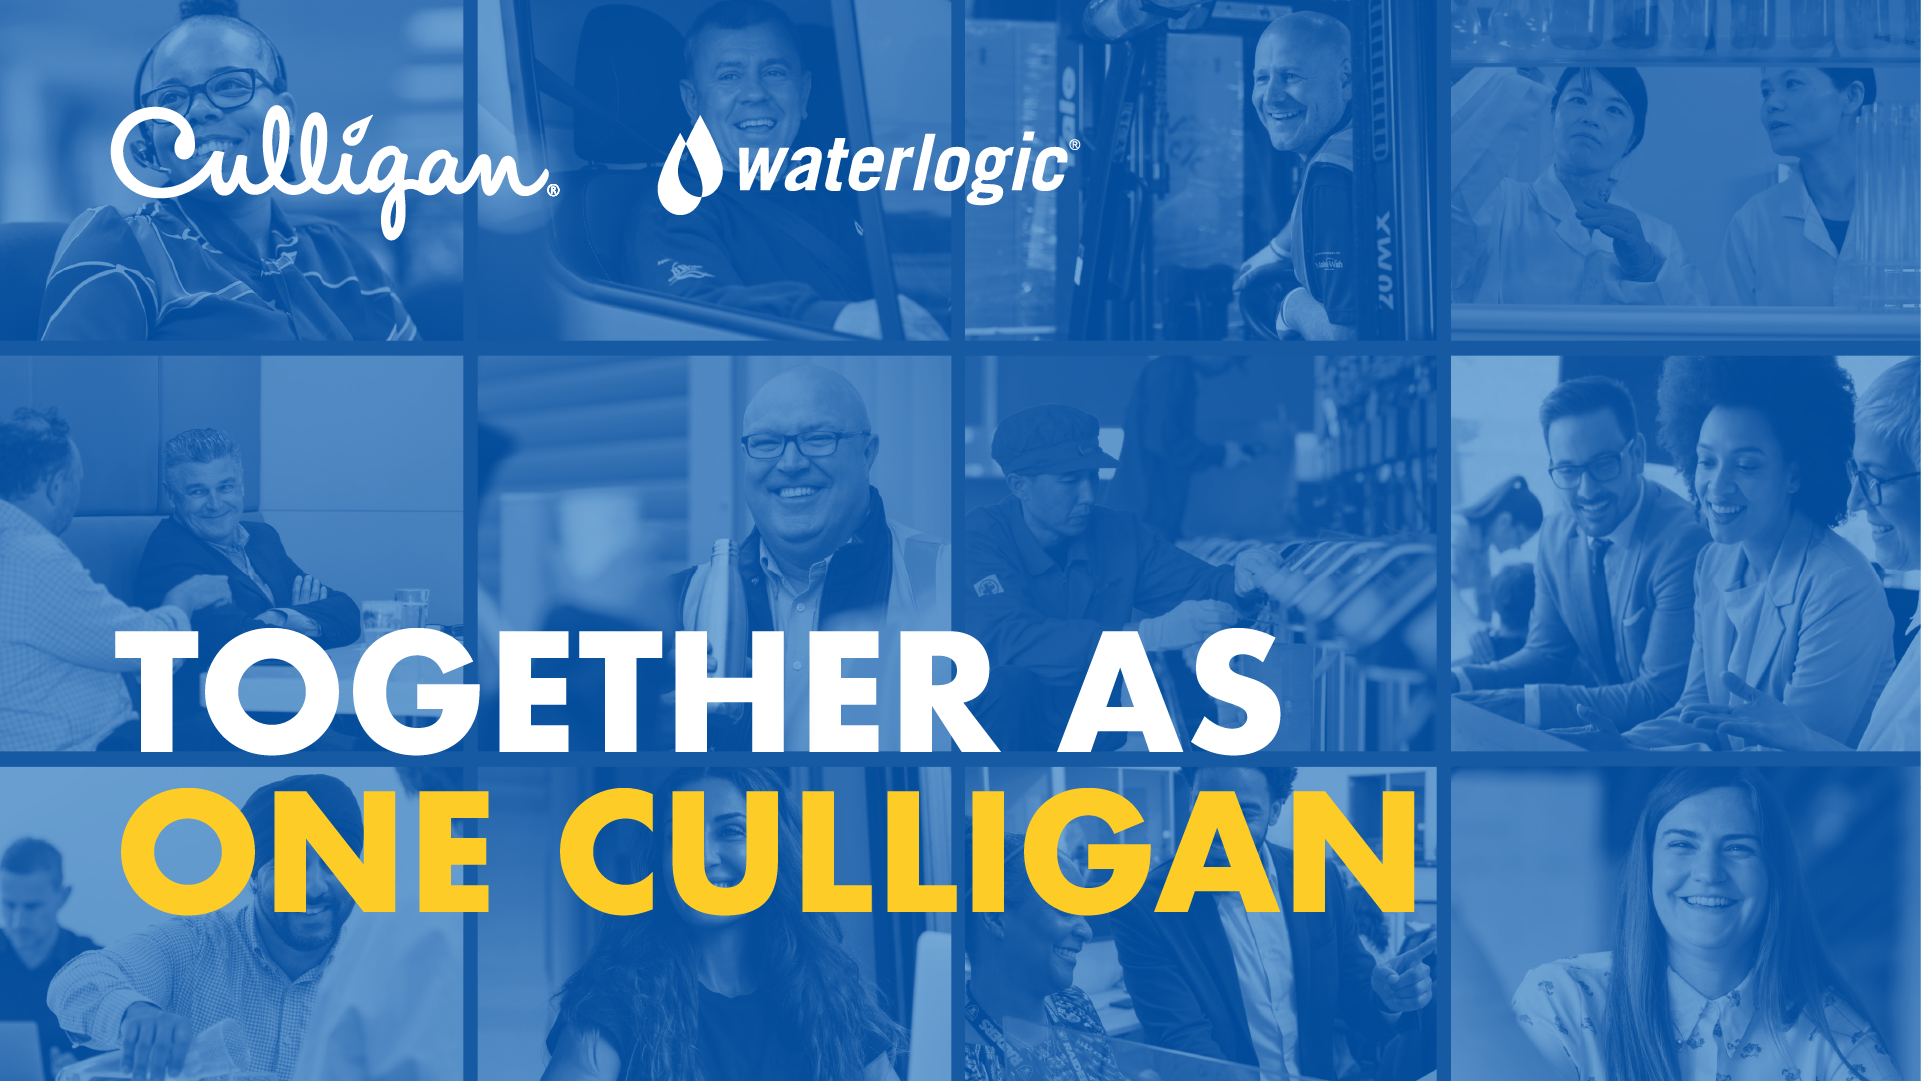 Culligan International y Waterlogic Group Holdings finalizan su unificación - article image